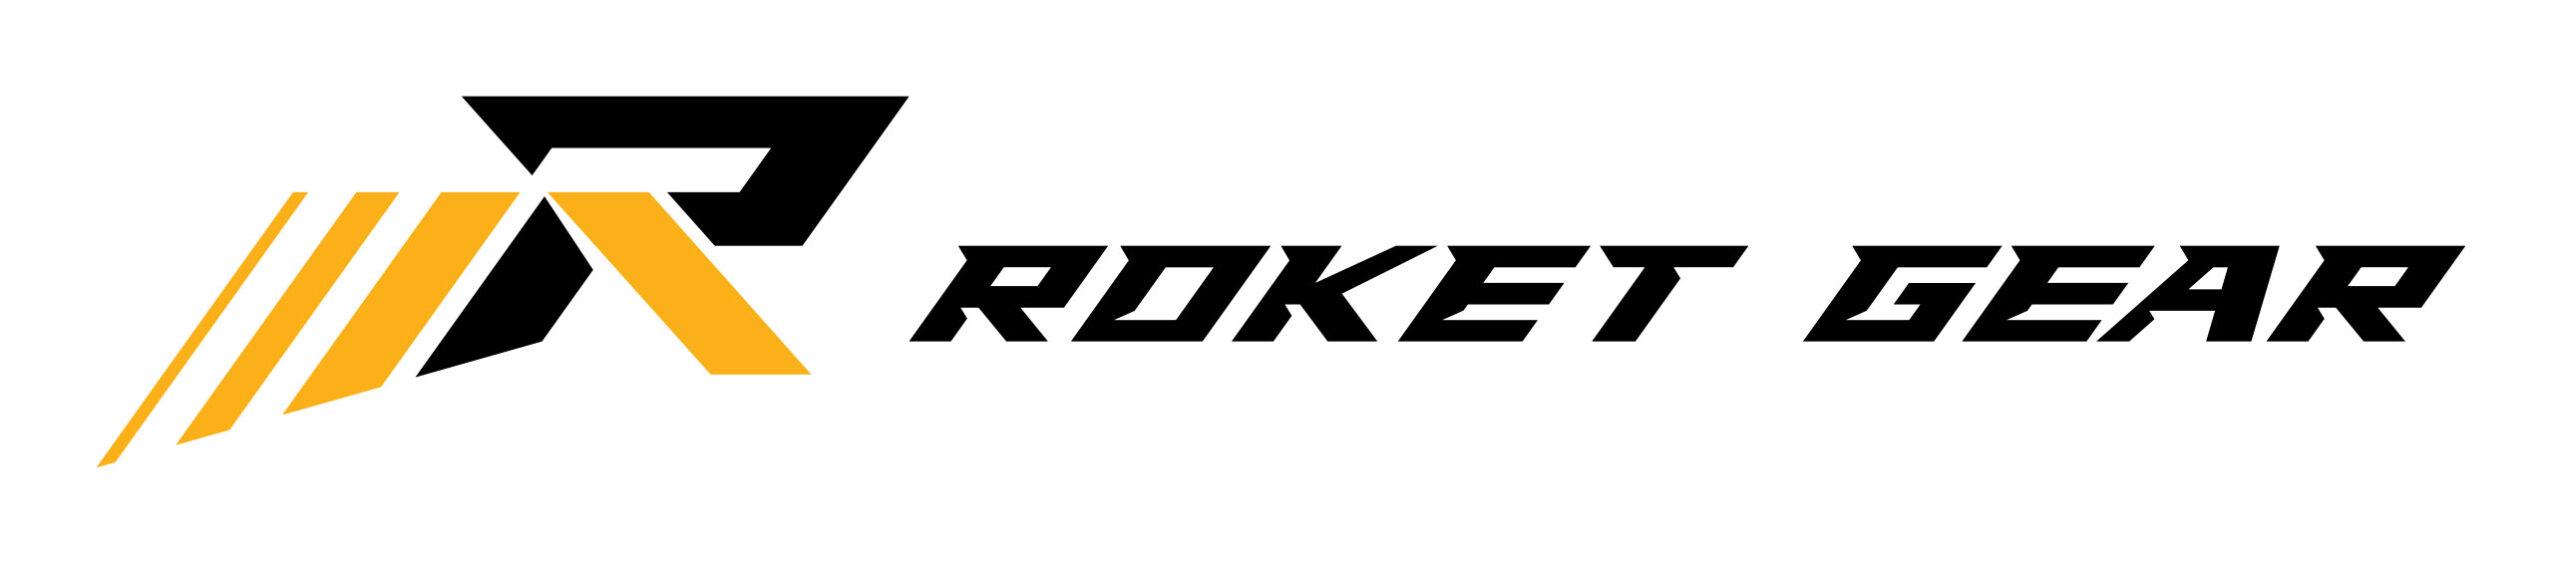 Rocket Gear logo